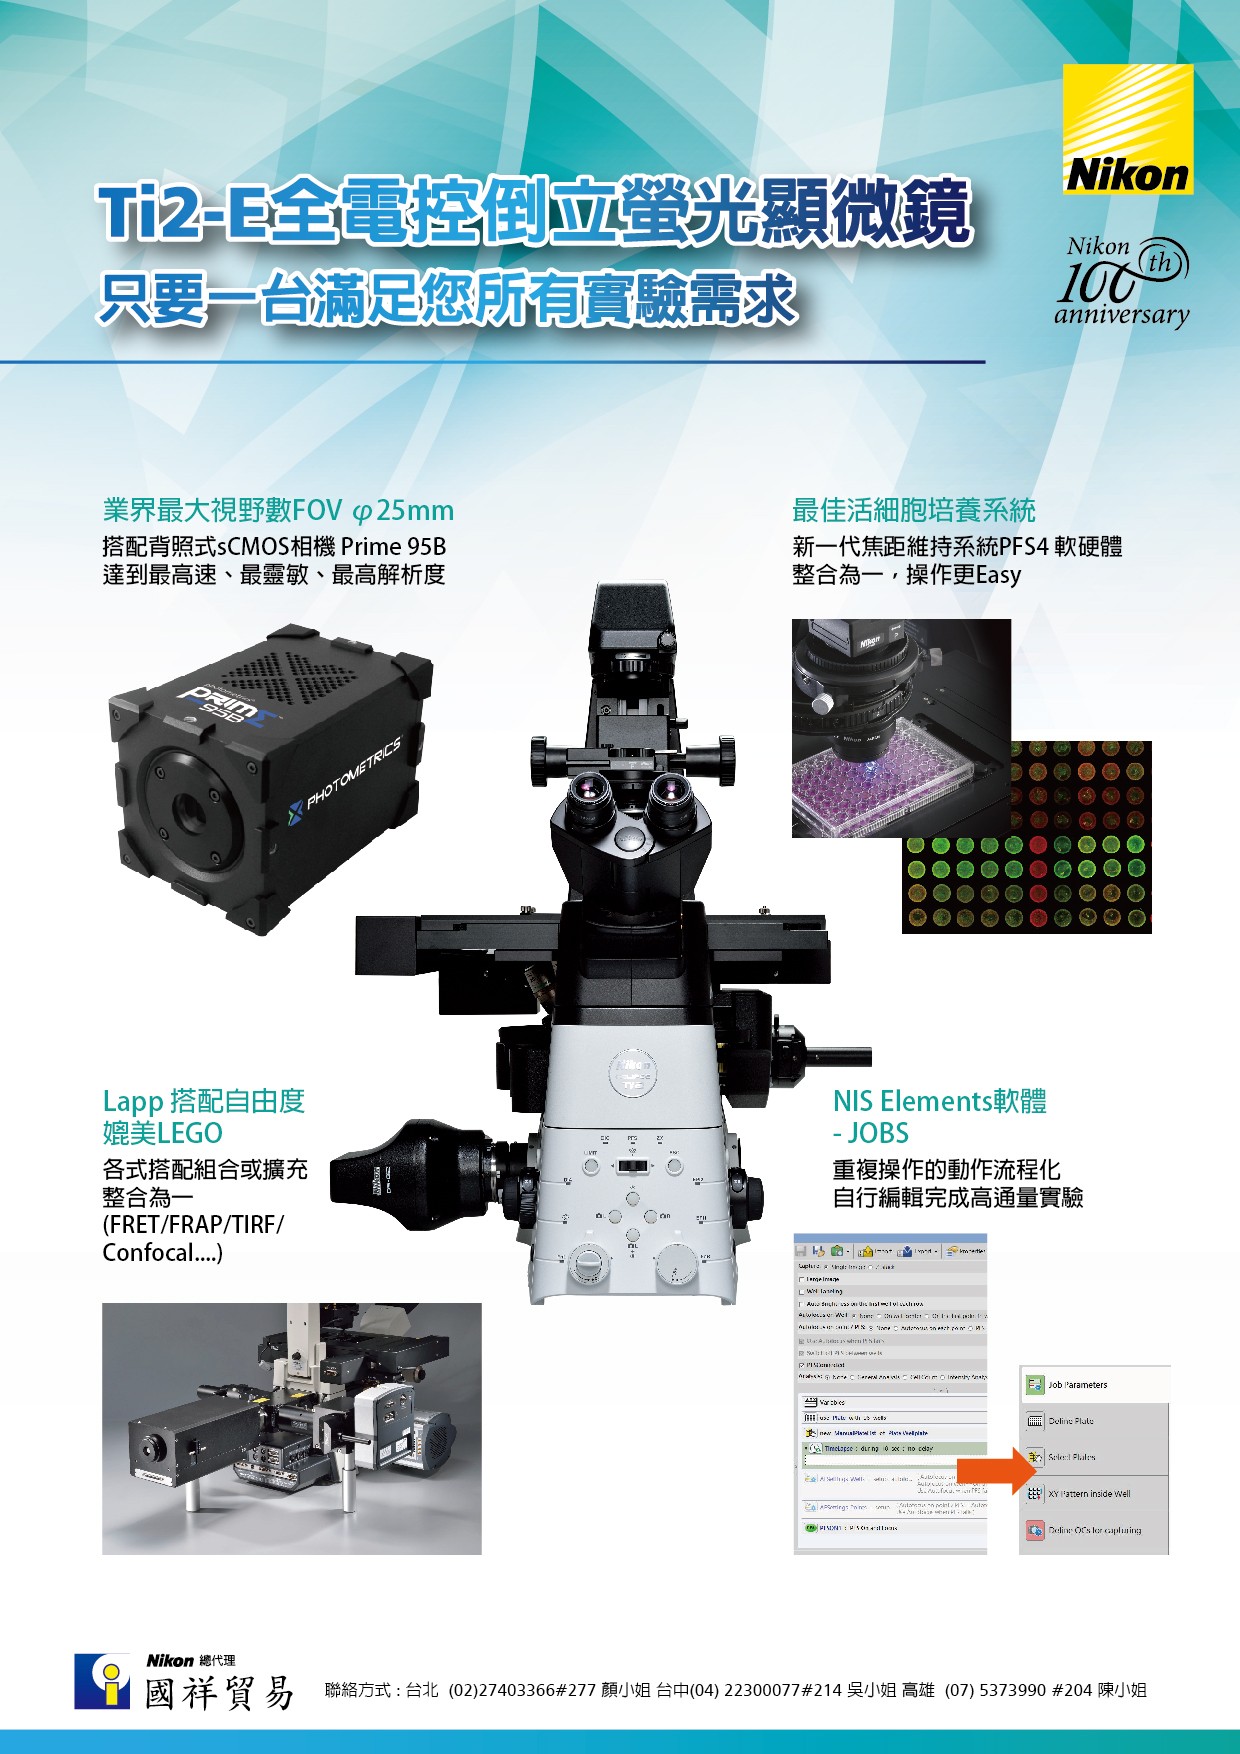 Ti2-E全電控倒立螢光顯微鏡 - 只要一台滿足您所有實驗需求 ---Ti2-E全電控倒立螢光顯微鏡